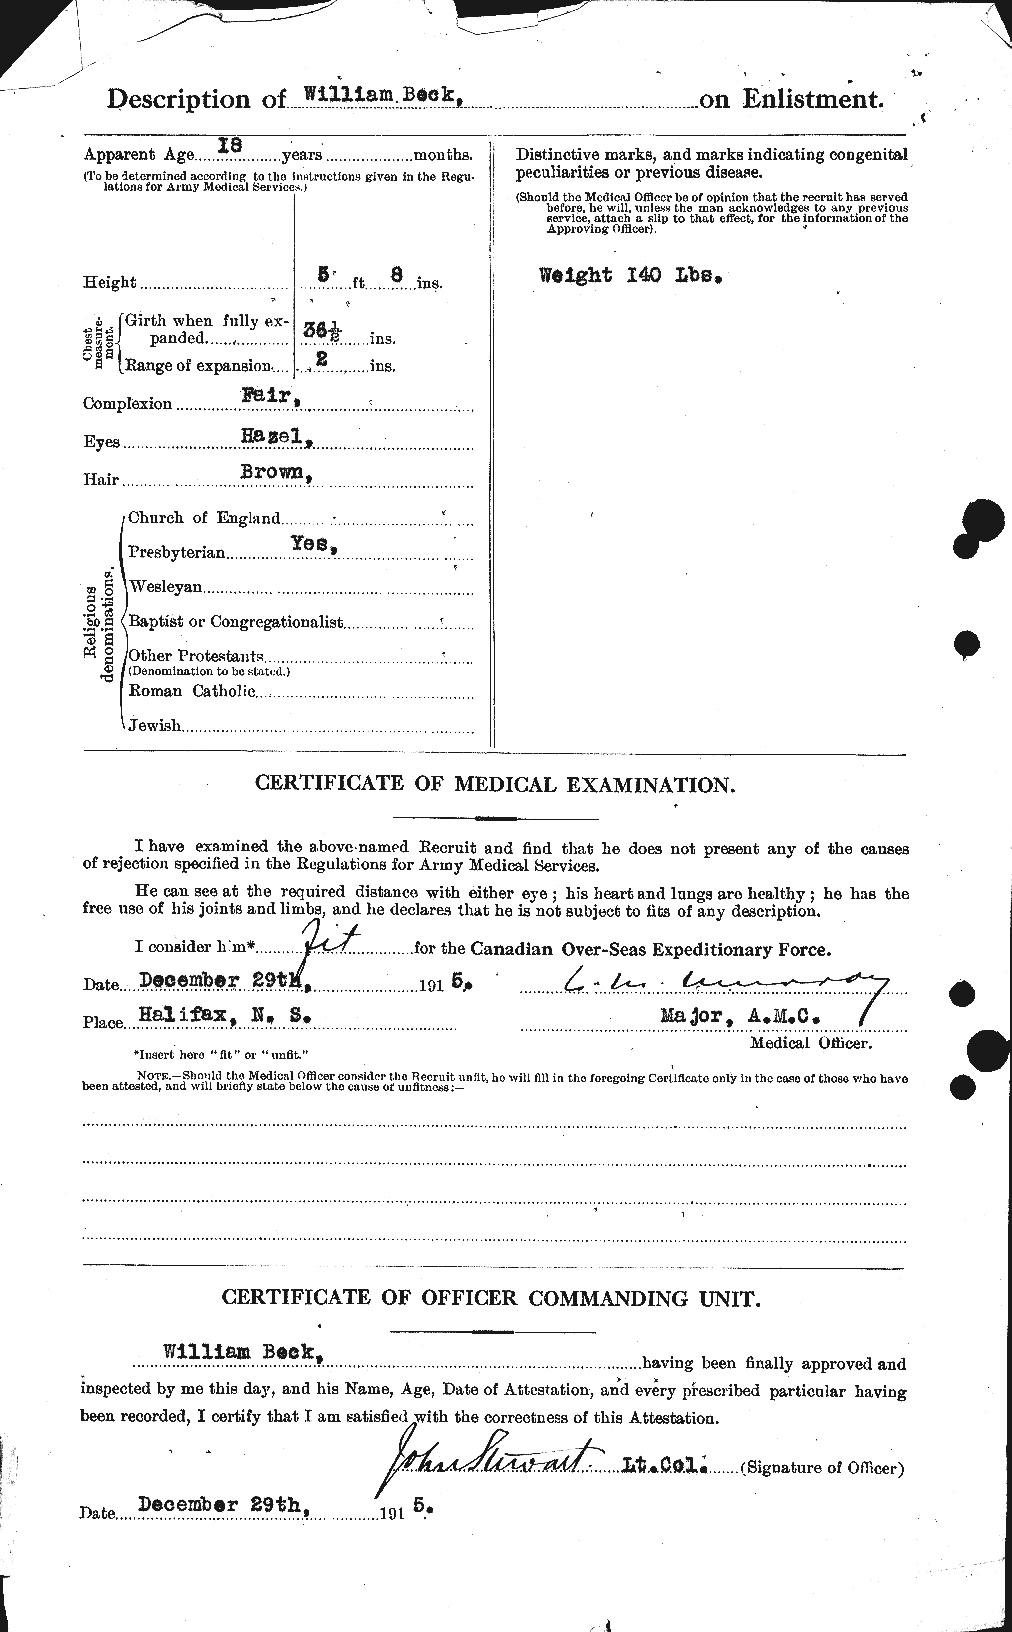 Dossiers du Personnel de la Première Guerre mondiale - CEC 232243b